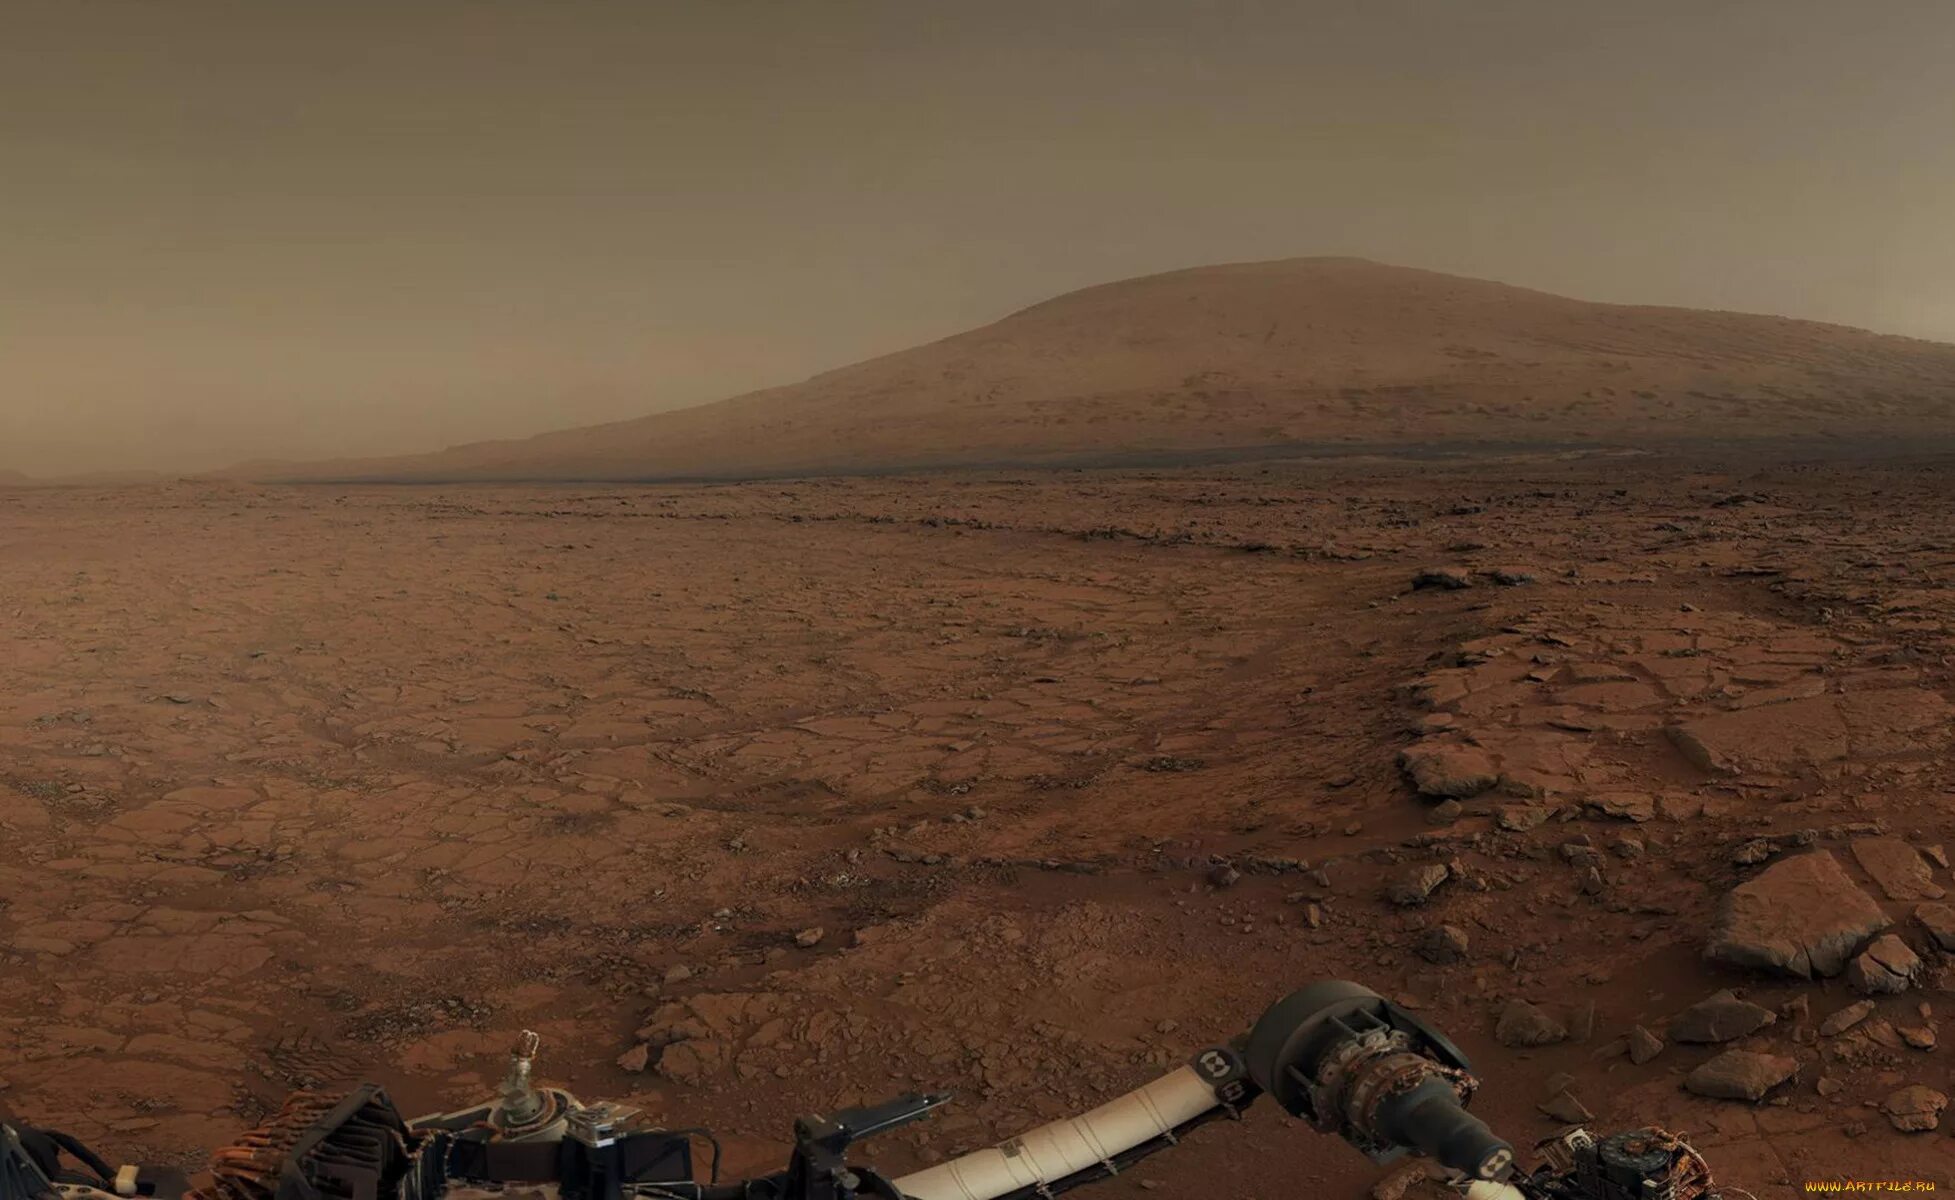 The other side of mars. Гора Олимп на Марсе. Снимки планеты Марс с марсохода. Марс поверхность планеты с марсоходом. Снимки с Марса 2022.